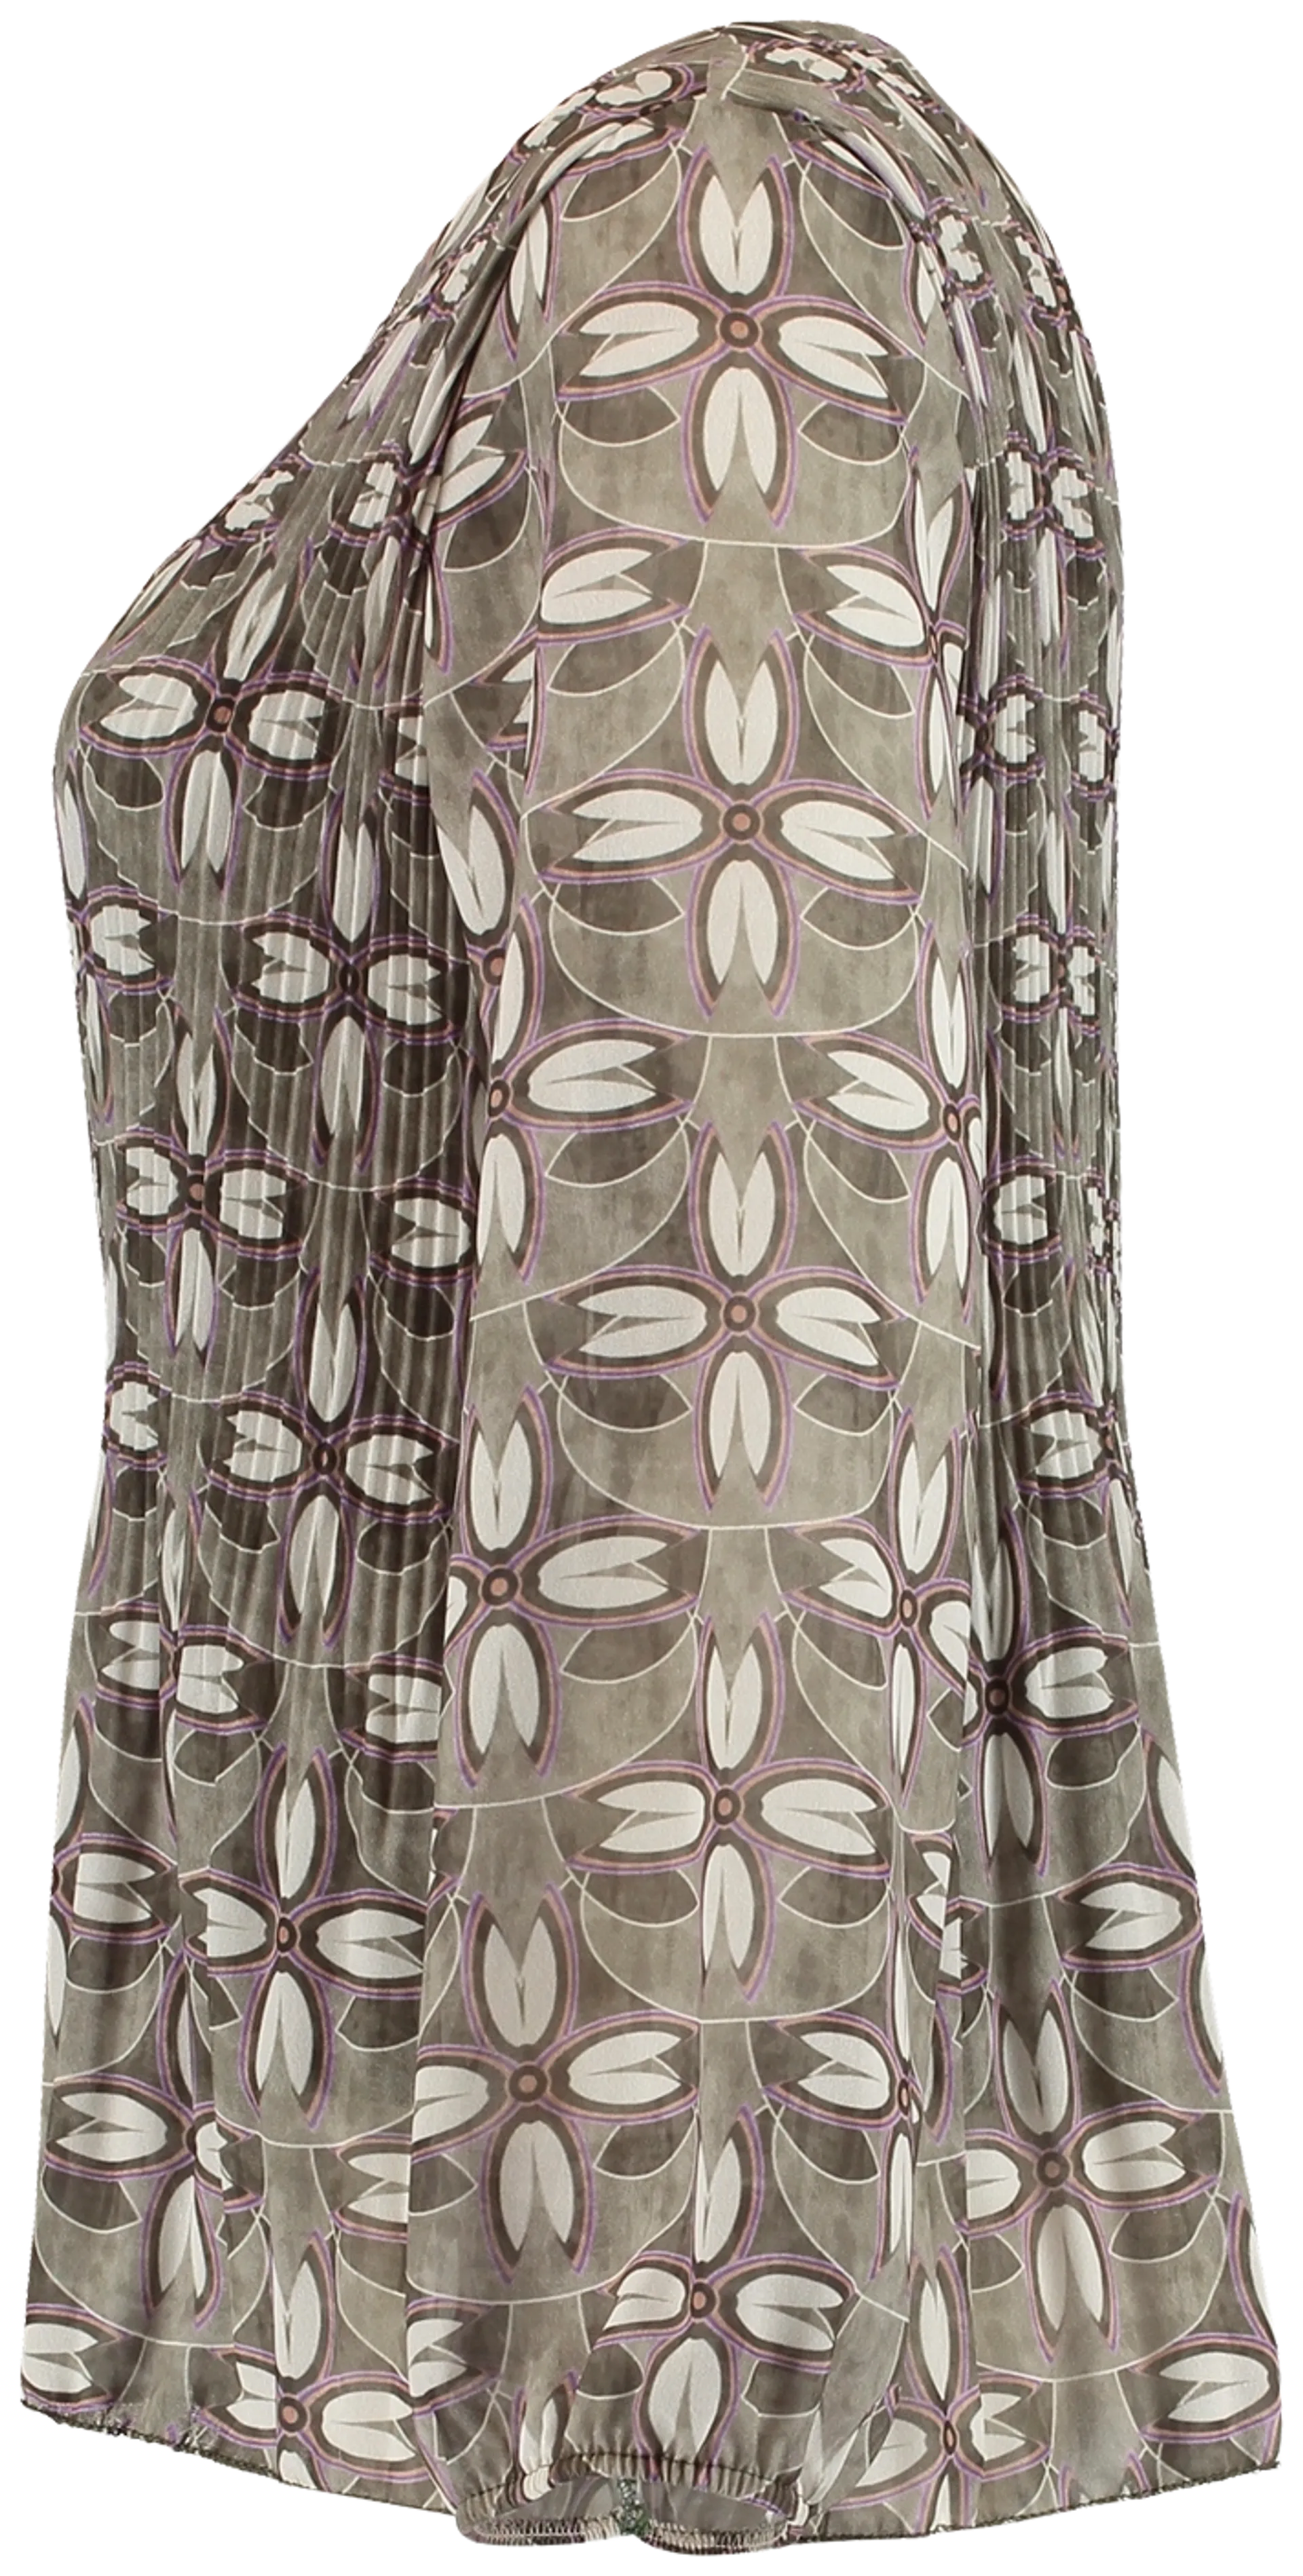 Zabaione naisten paitapusero Jona BK-133-142 - lkhaki - 2